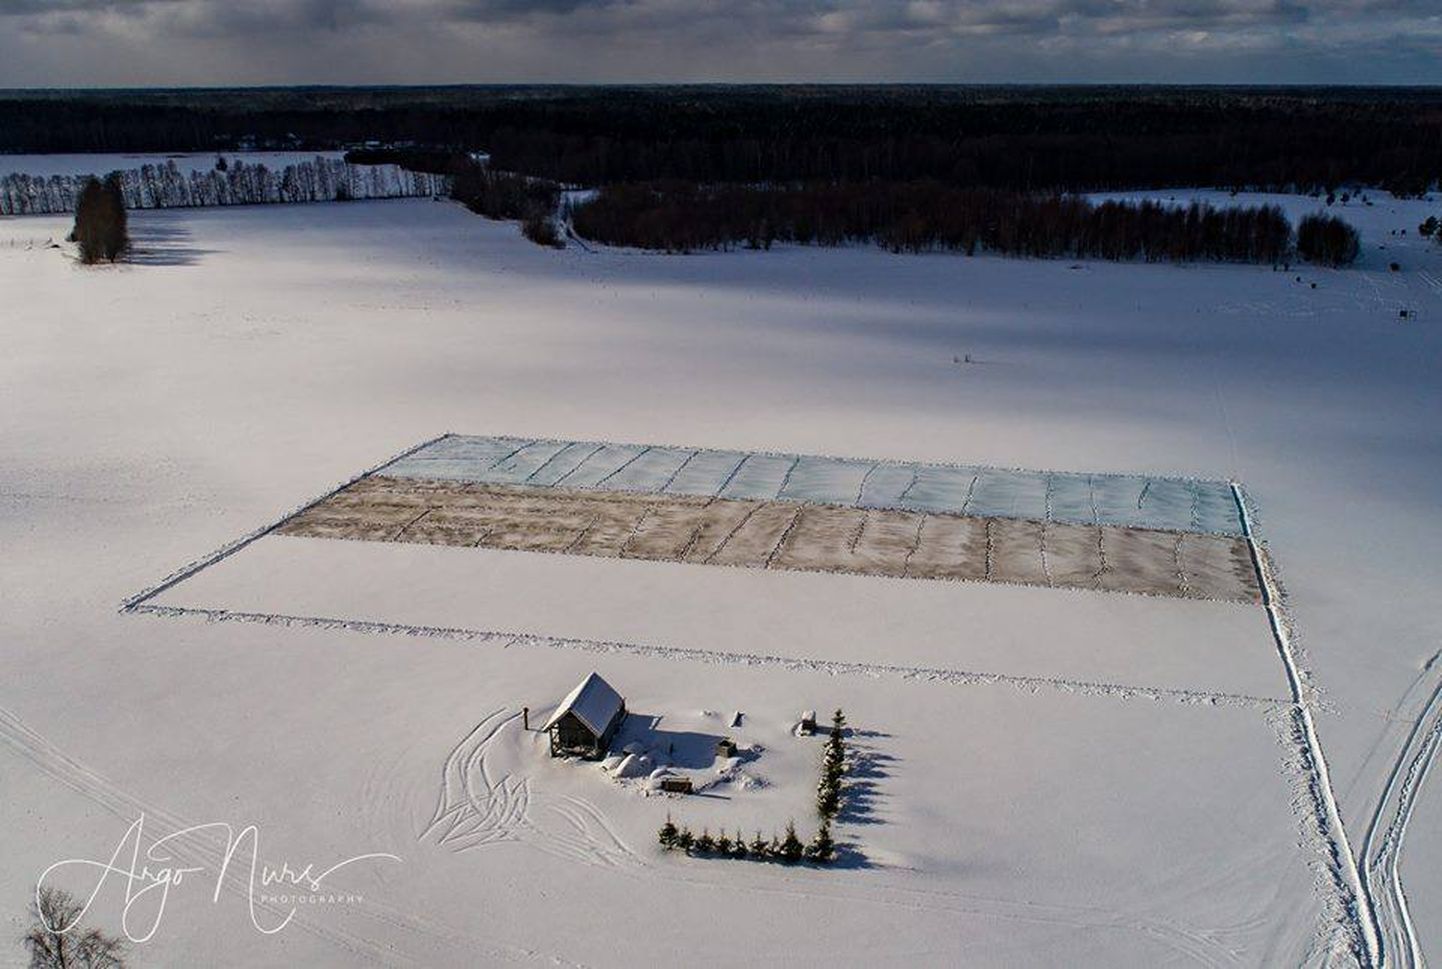 Eesti suurim lumelipp valmis Hiiumaal kingitusena Eestile. Tegijaid ühtekokku 106 inimest ja üks koer.